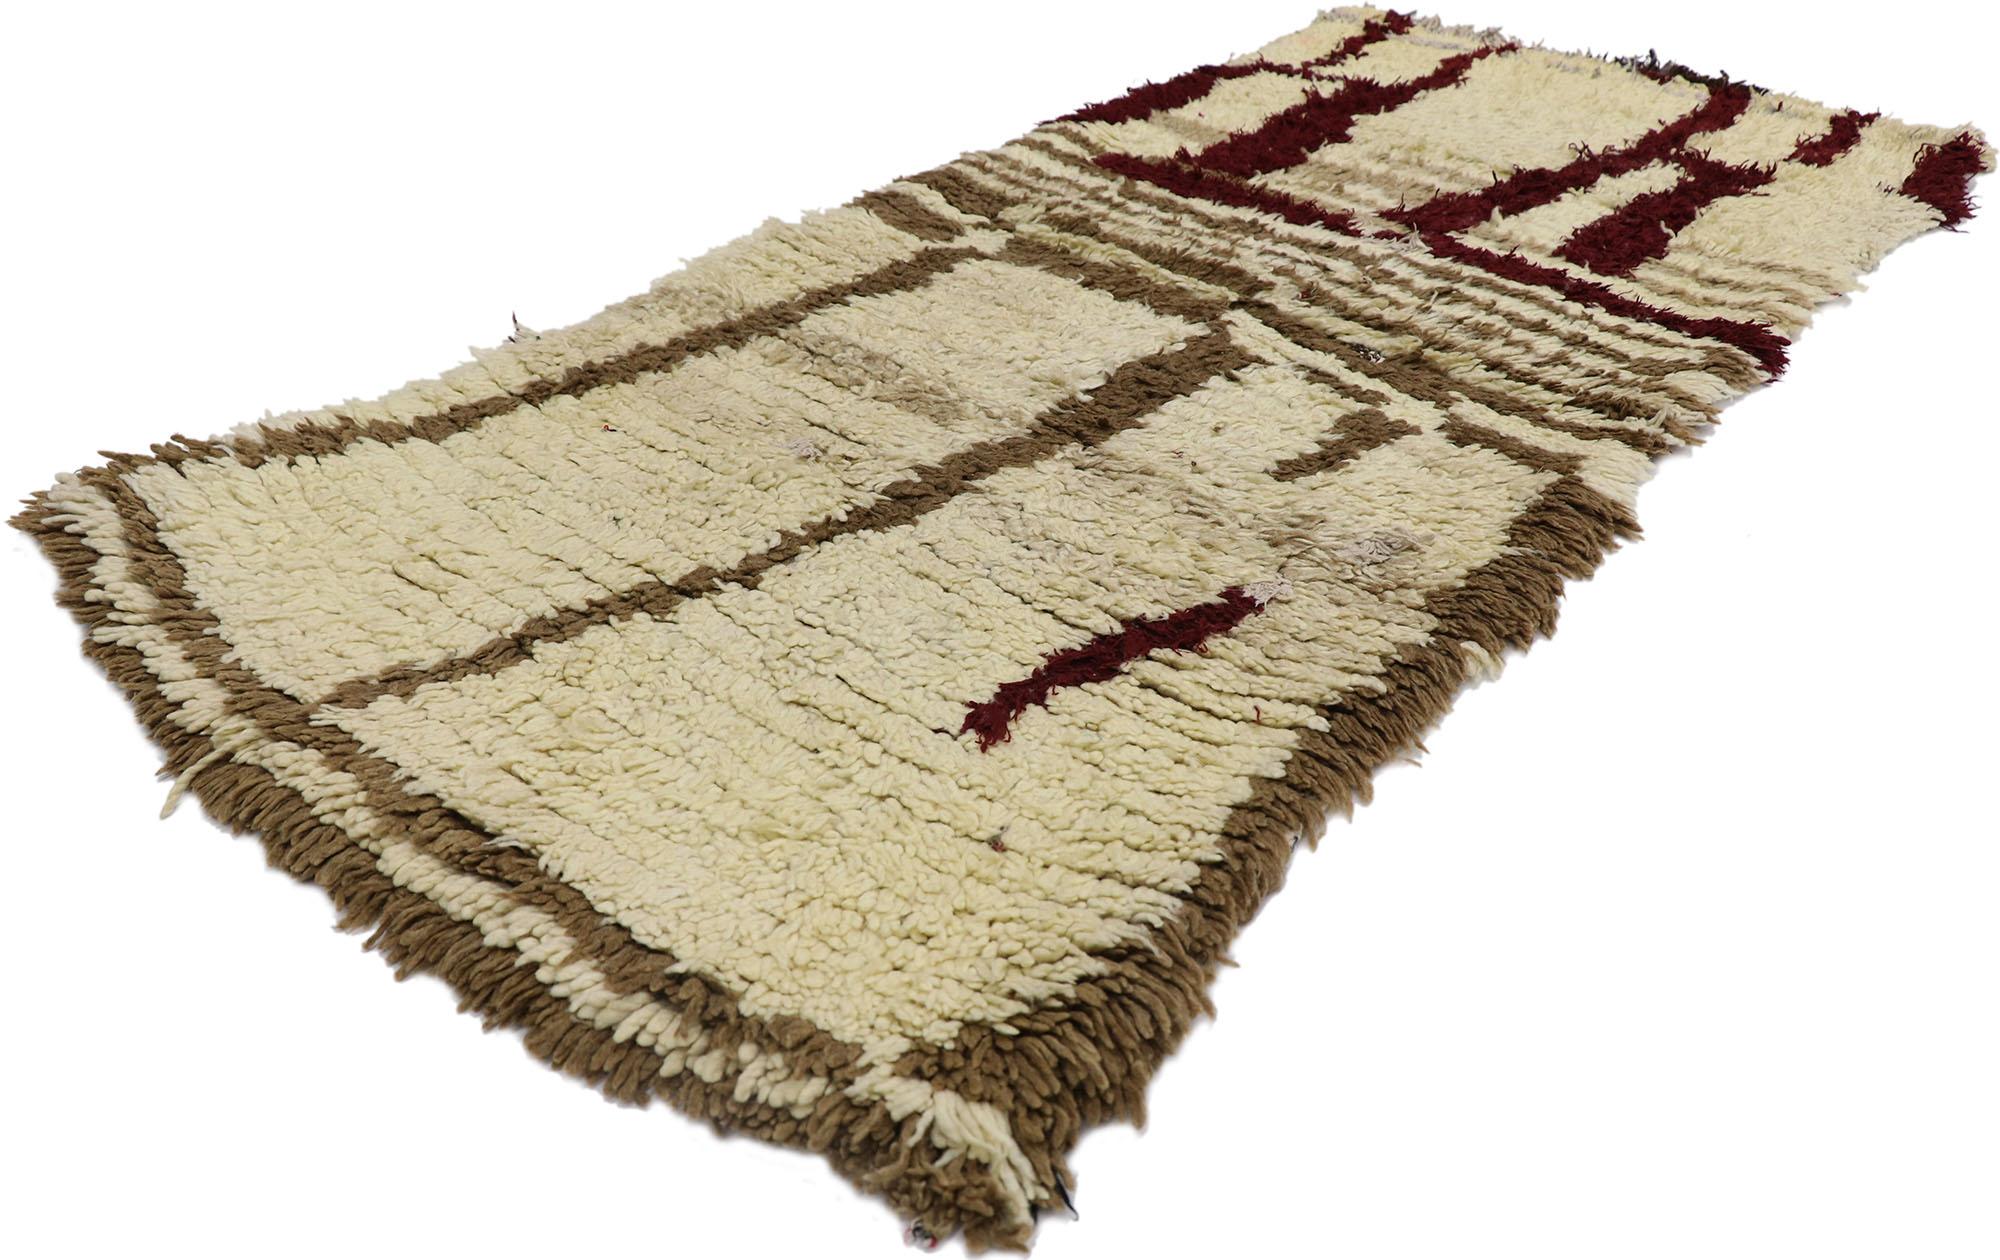 21598 Vintage Berber marokkanischen Azilal Teppich mit Mid-Century Modern Style 02'05 x 05'06. Dieser handgeknüpfte marokkanische Berberteppich Azilal aus Baumwolle und Wolle im Vintage-Stil ist mit seiner Schlichtheit, seinem weichen Flor und